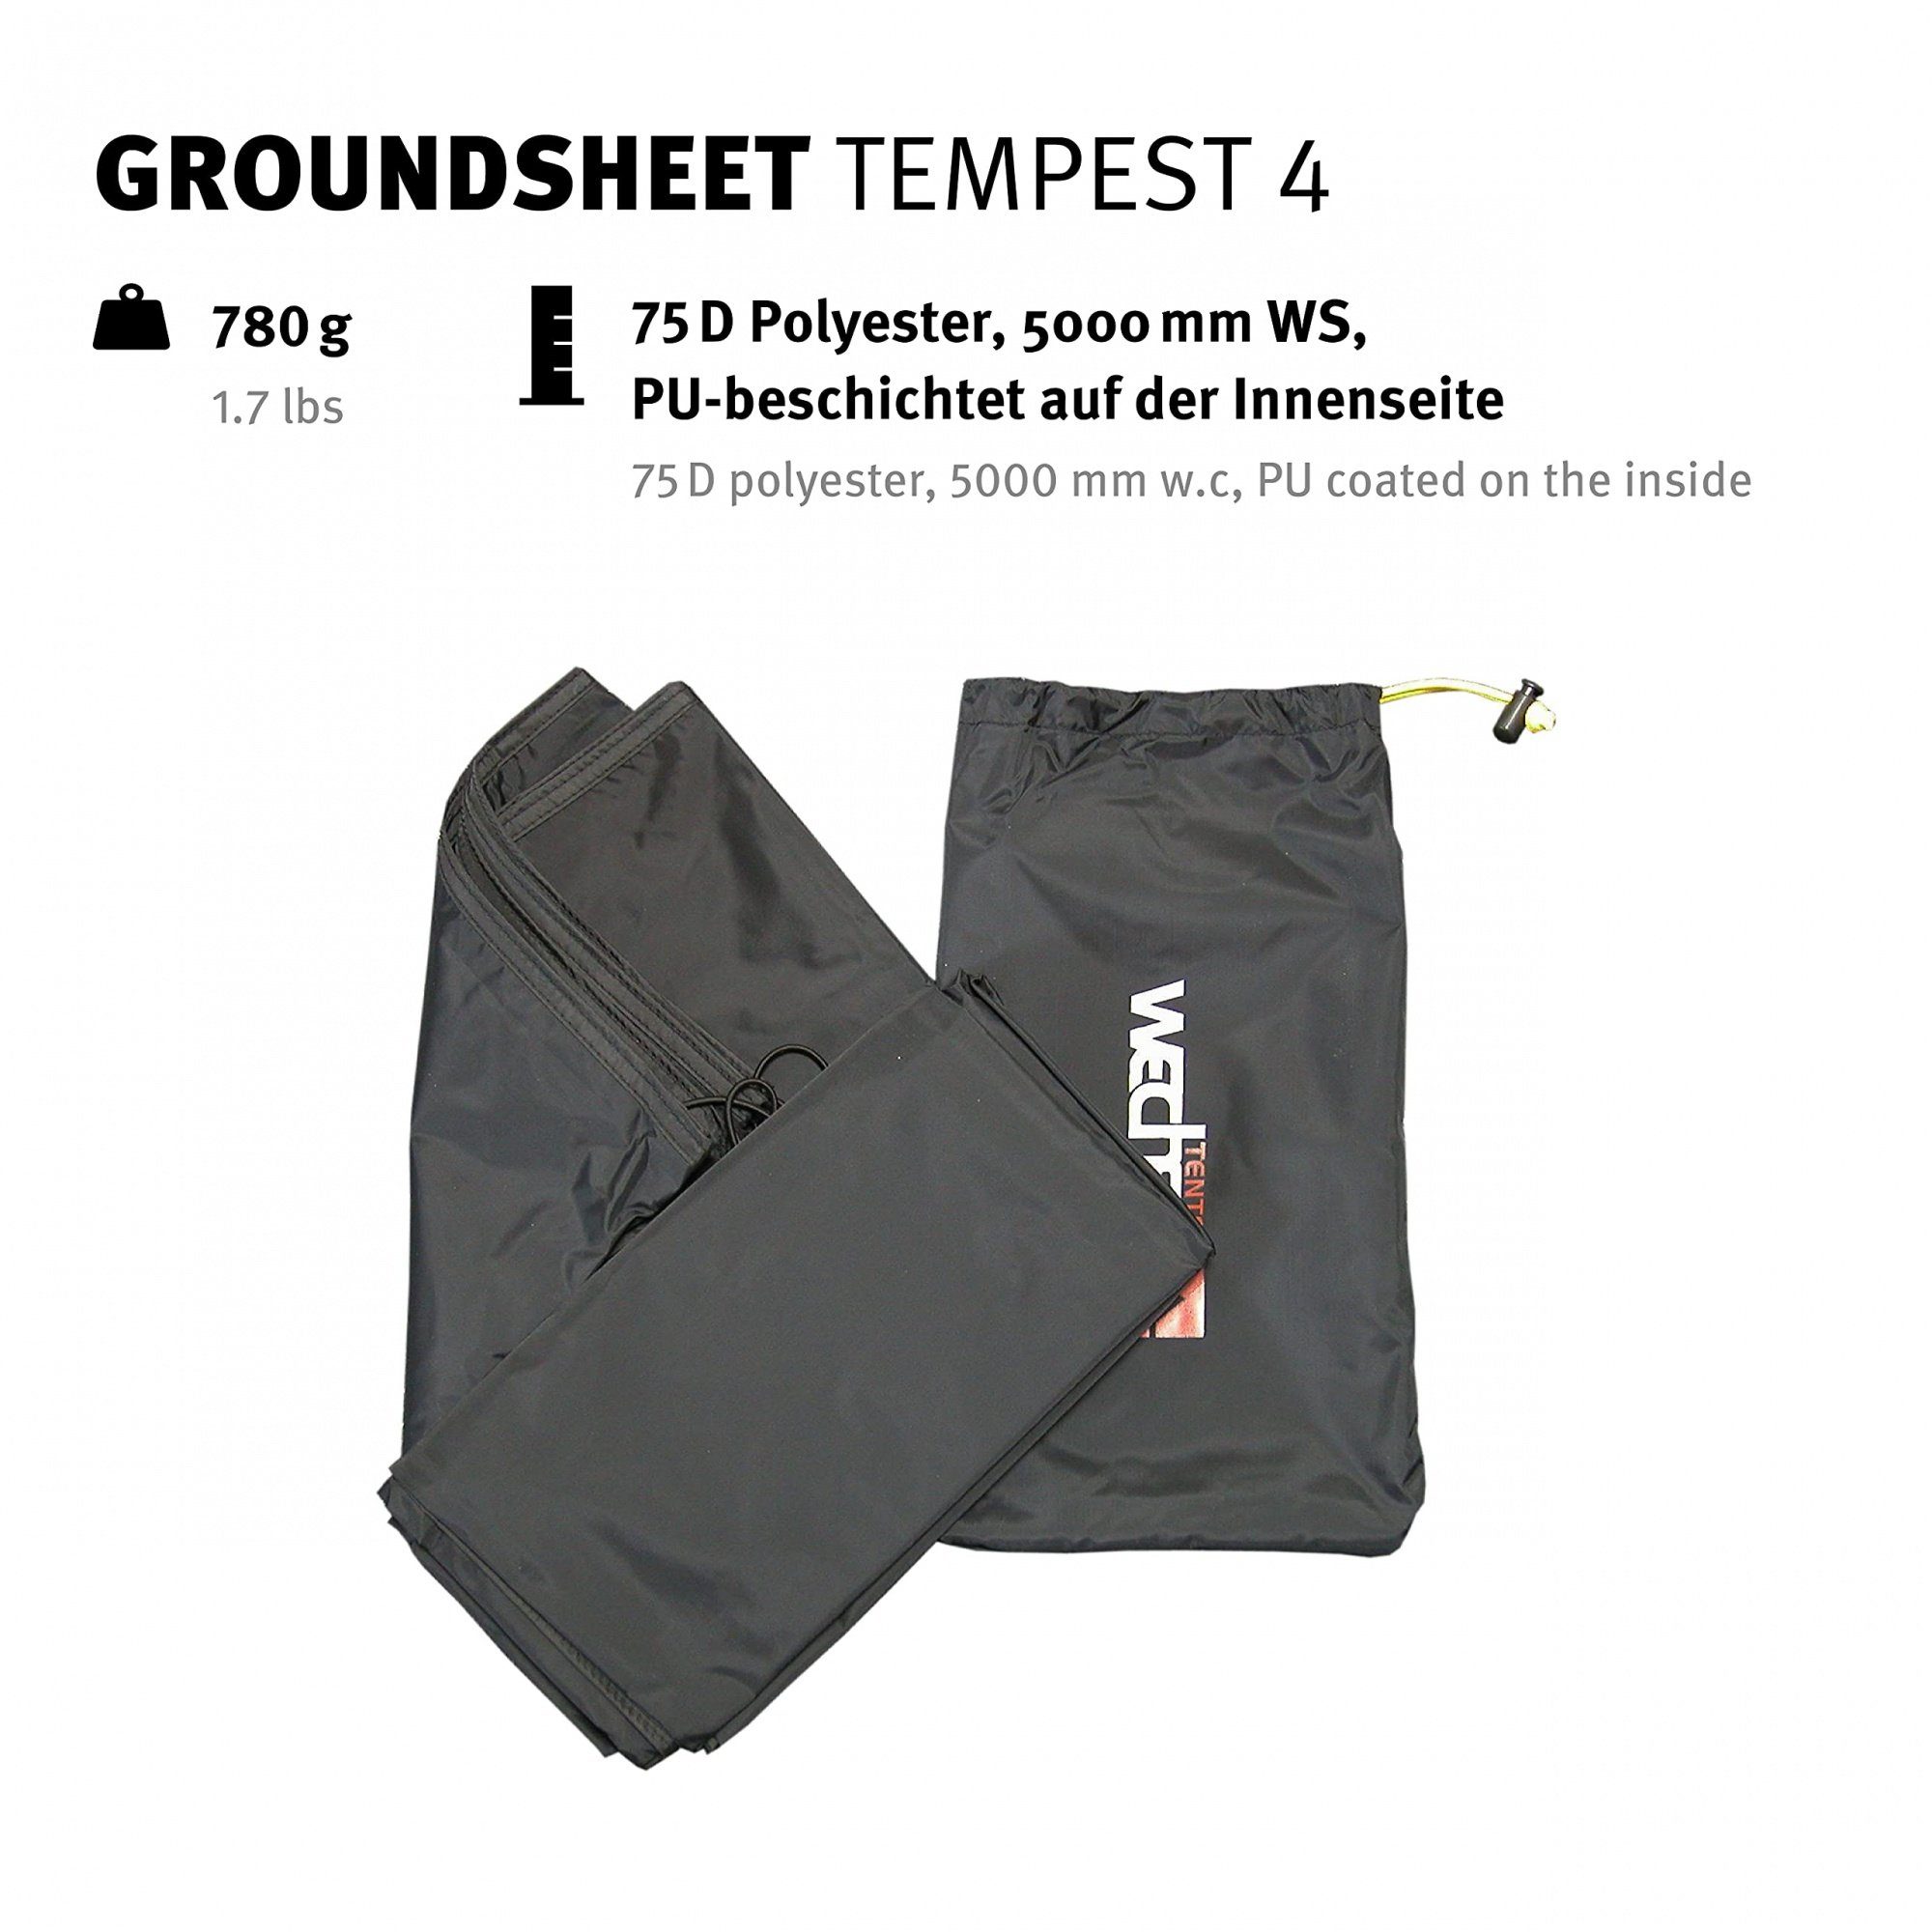 Tempest 4 für Tents Zeltunterlage Groundsheet Zelt Wechsel das